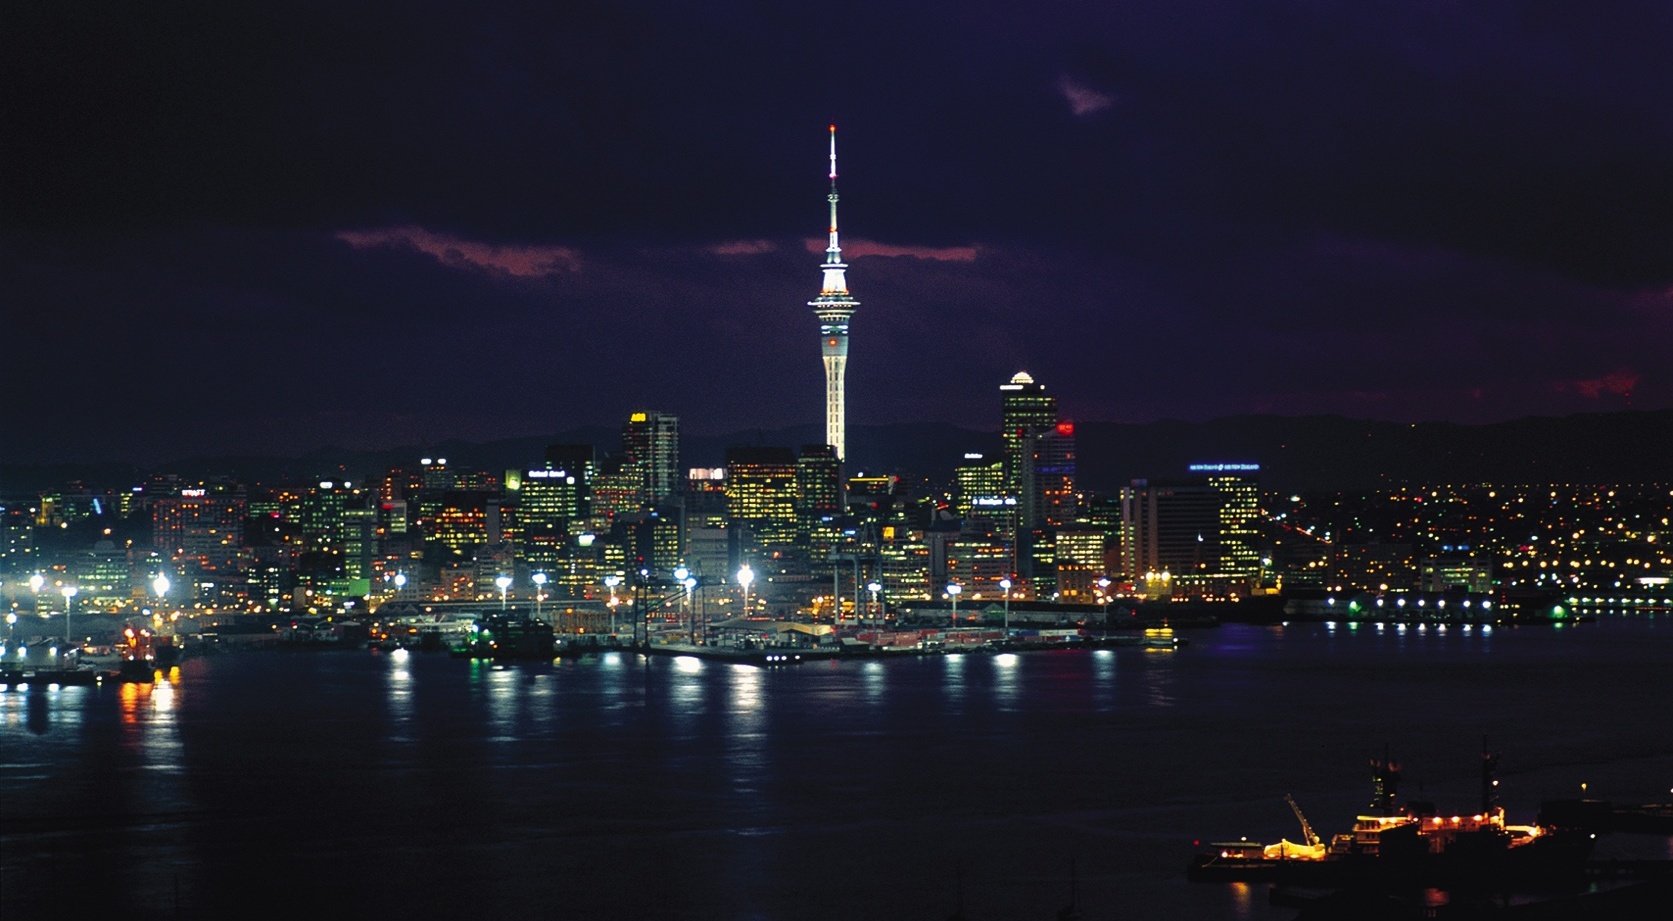 https://www.yizuo-media.com/albums/albums/userpics/10003/Auckland_Sky_City.jpg